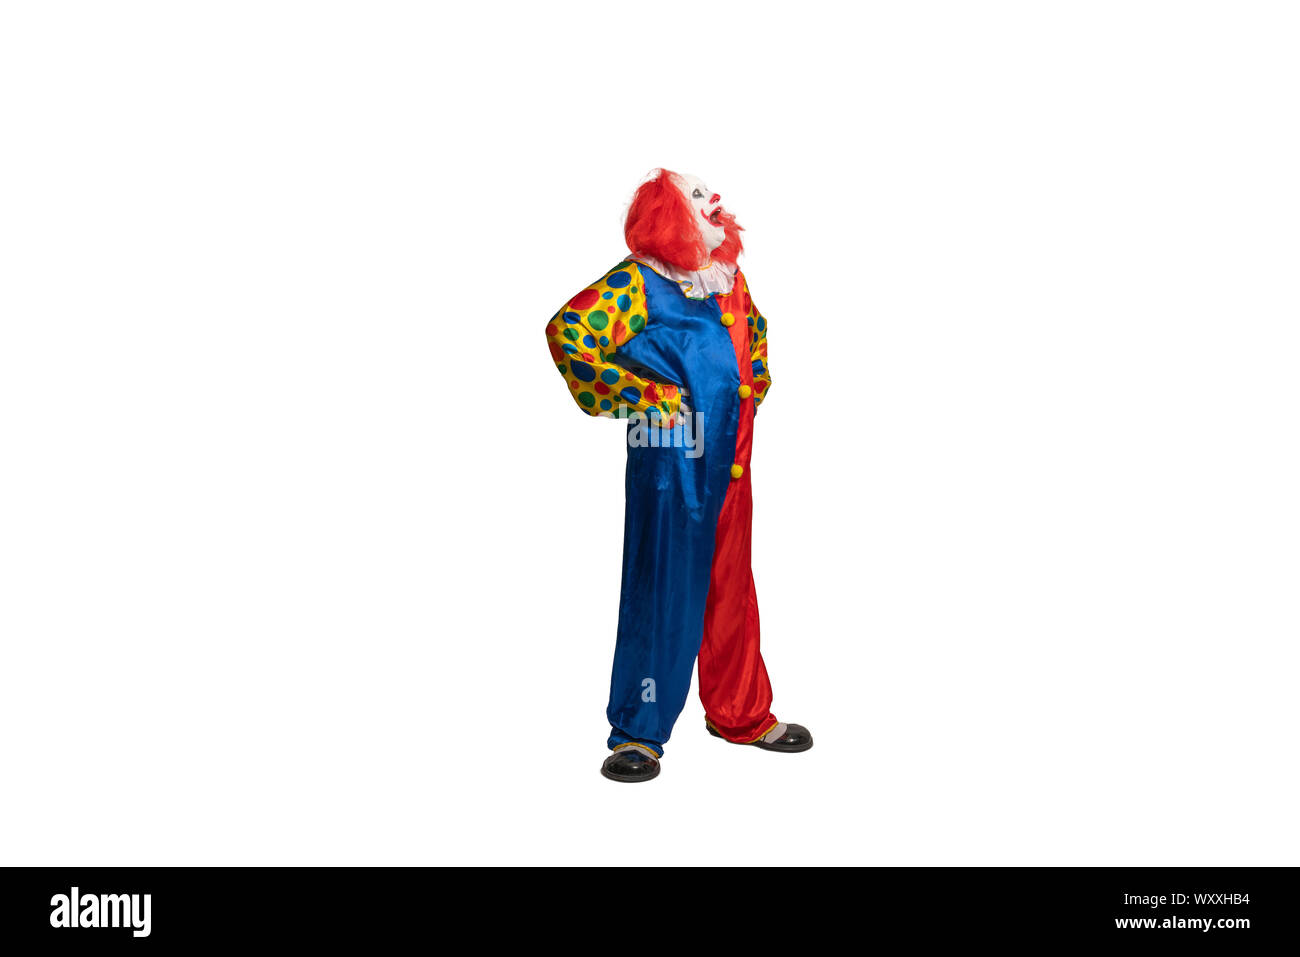 Funny clown avec le costume et le maquillage a l'air sur le côté Banque D'Images